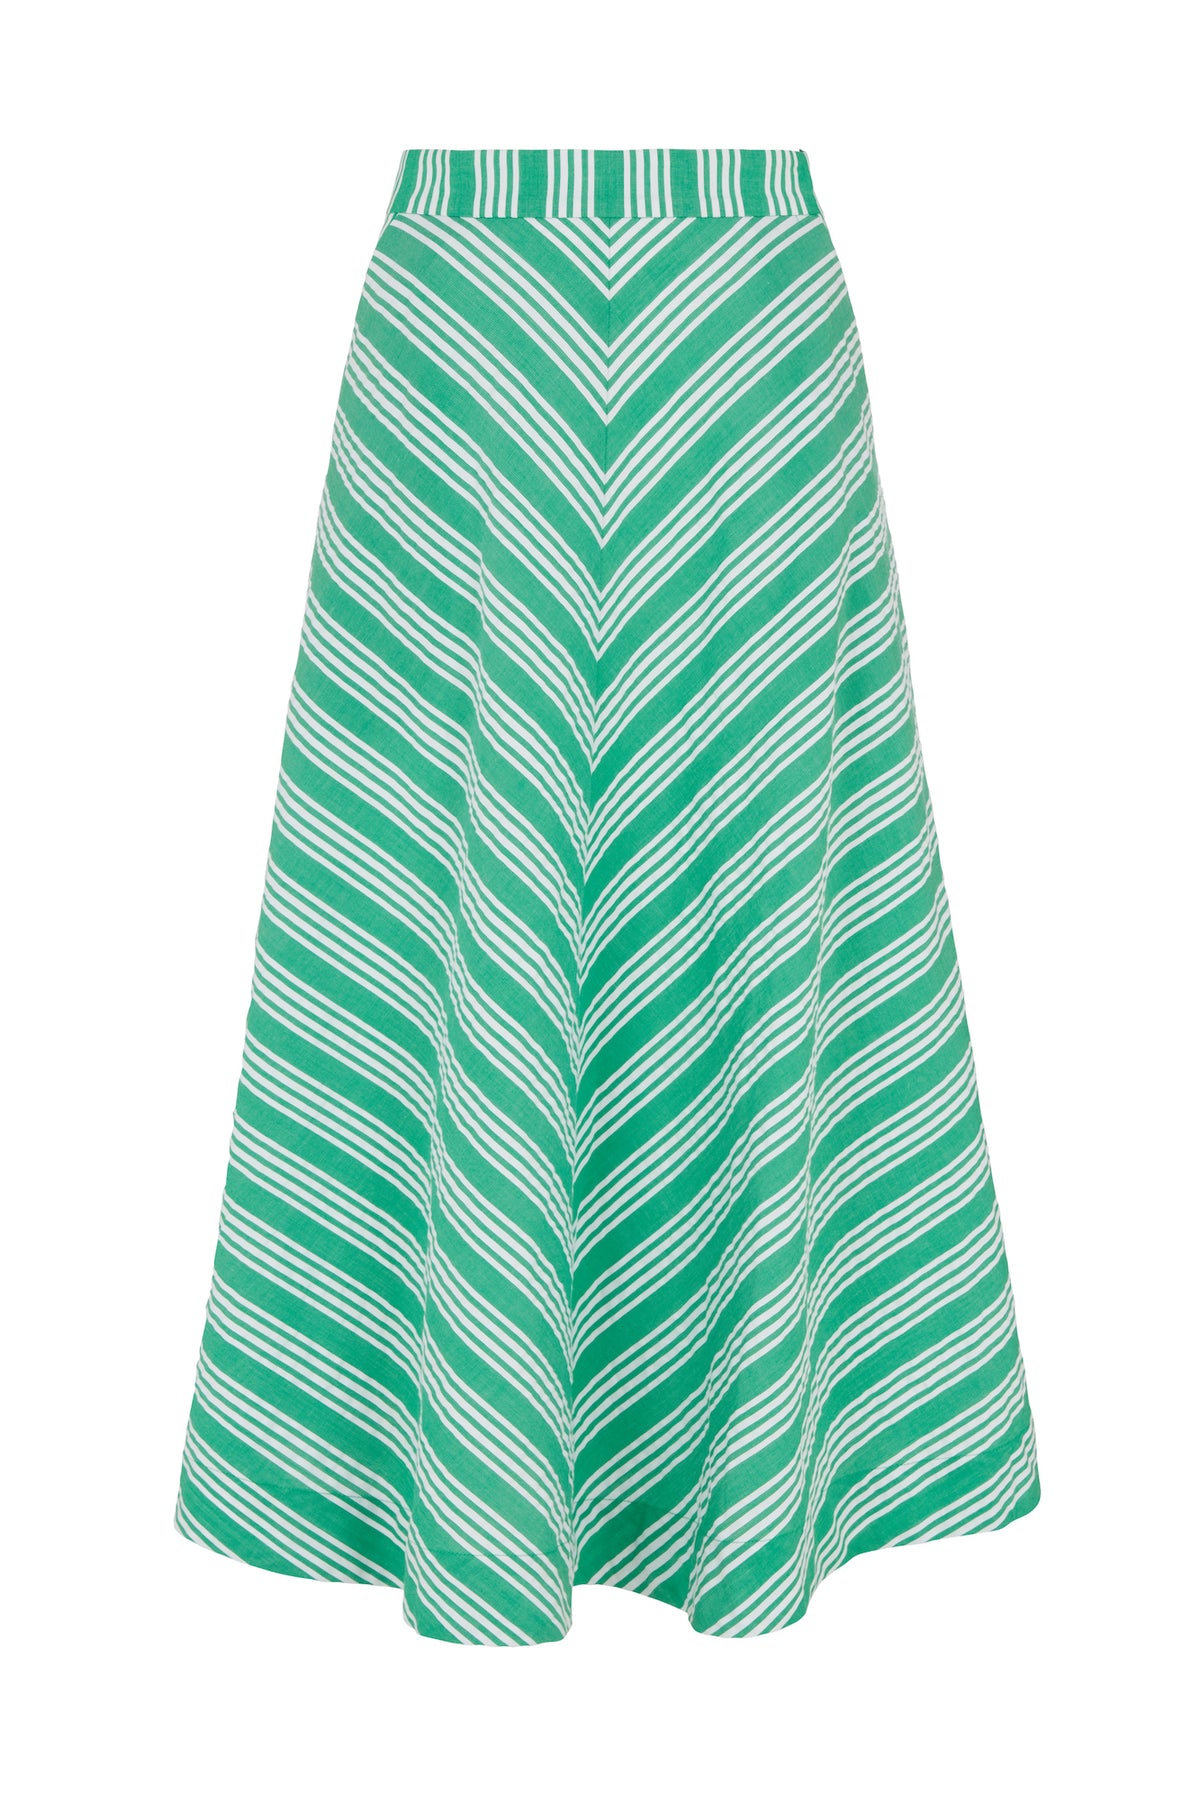 Sandra Beachcomber Stripe Green Skirt – Emily and Fin